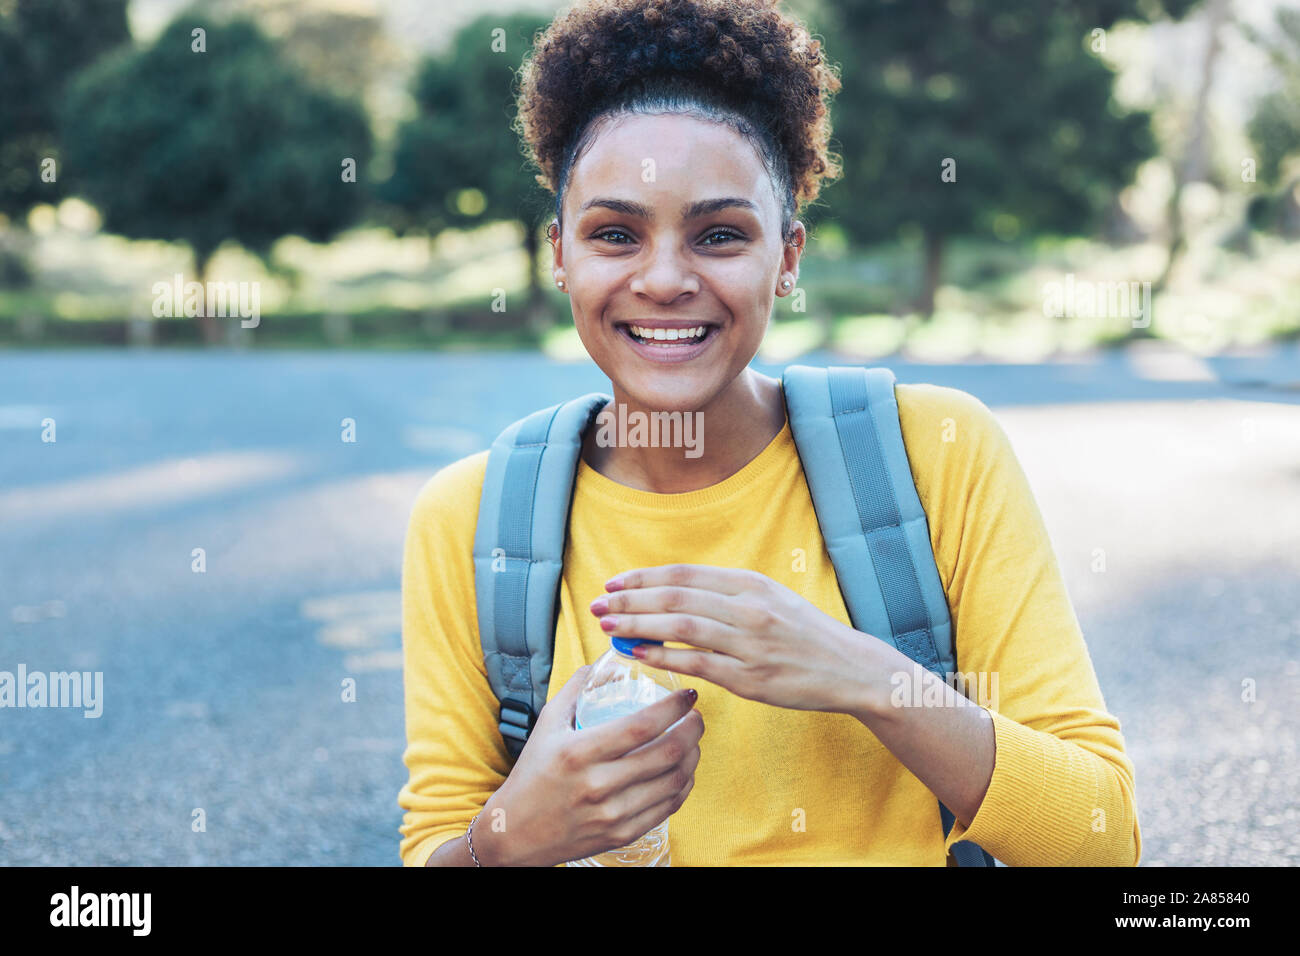 Portrait heureux, confiants jeune femme avec de l'eau bouteille Banque D'Images